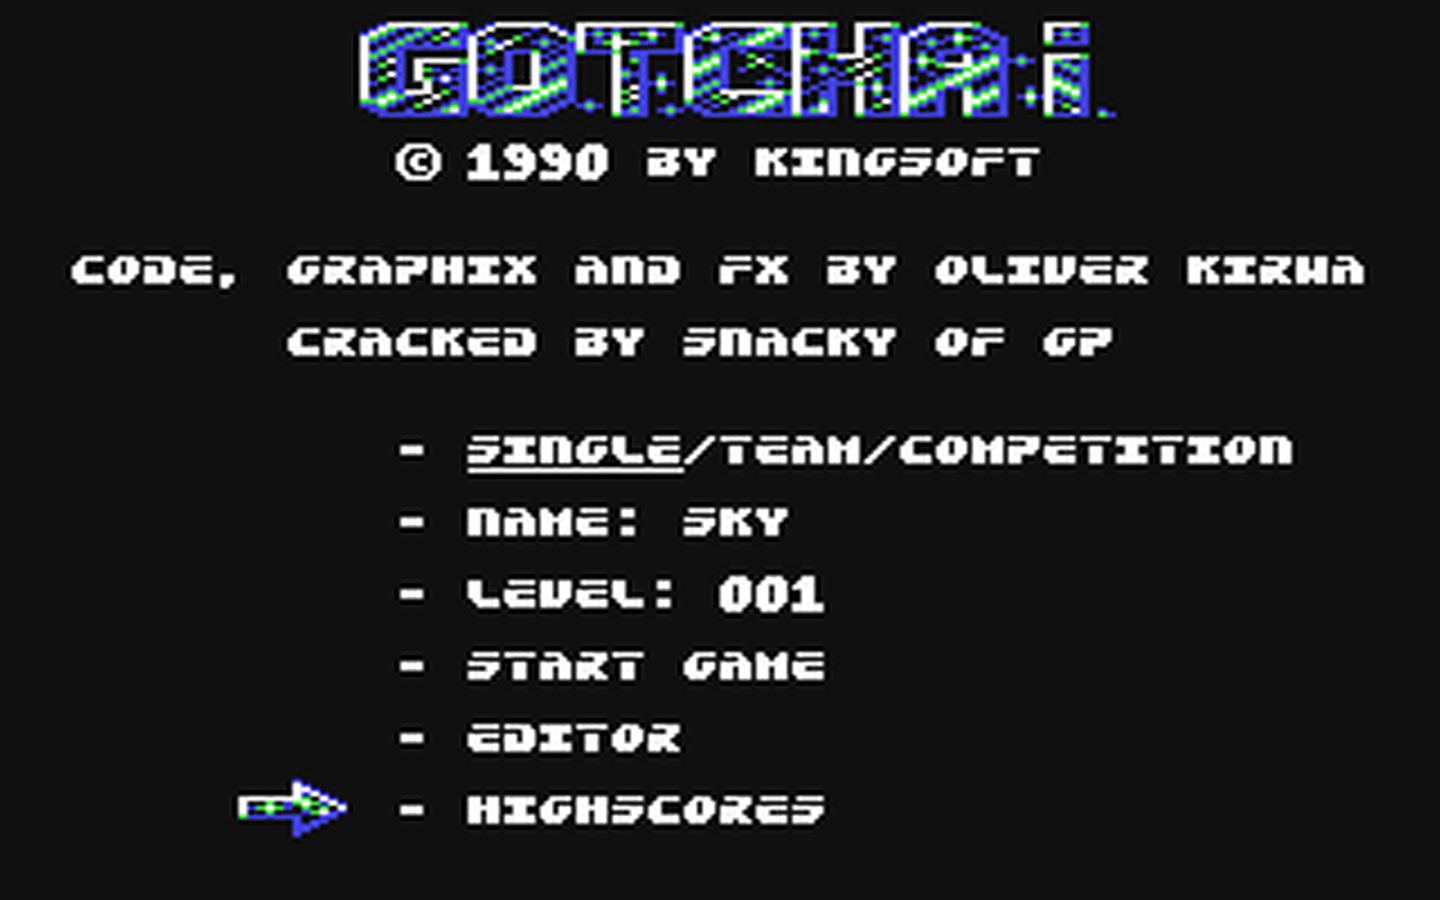 C64 GameBase Gotcha! Kingsoft 1990